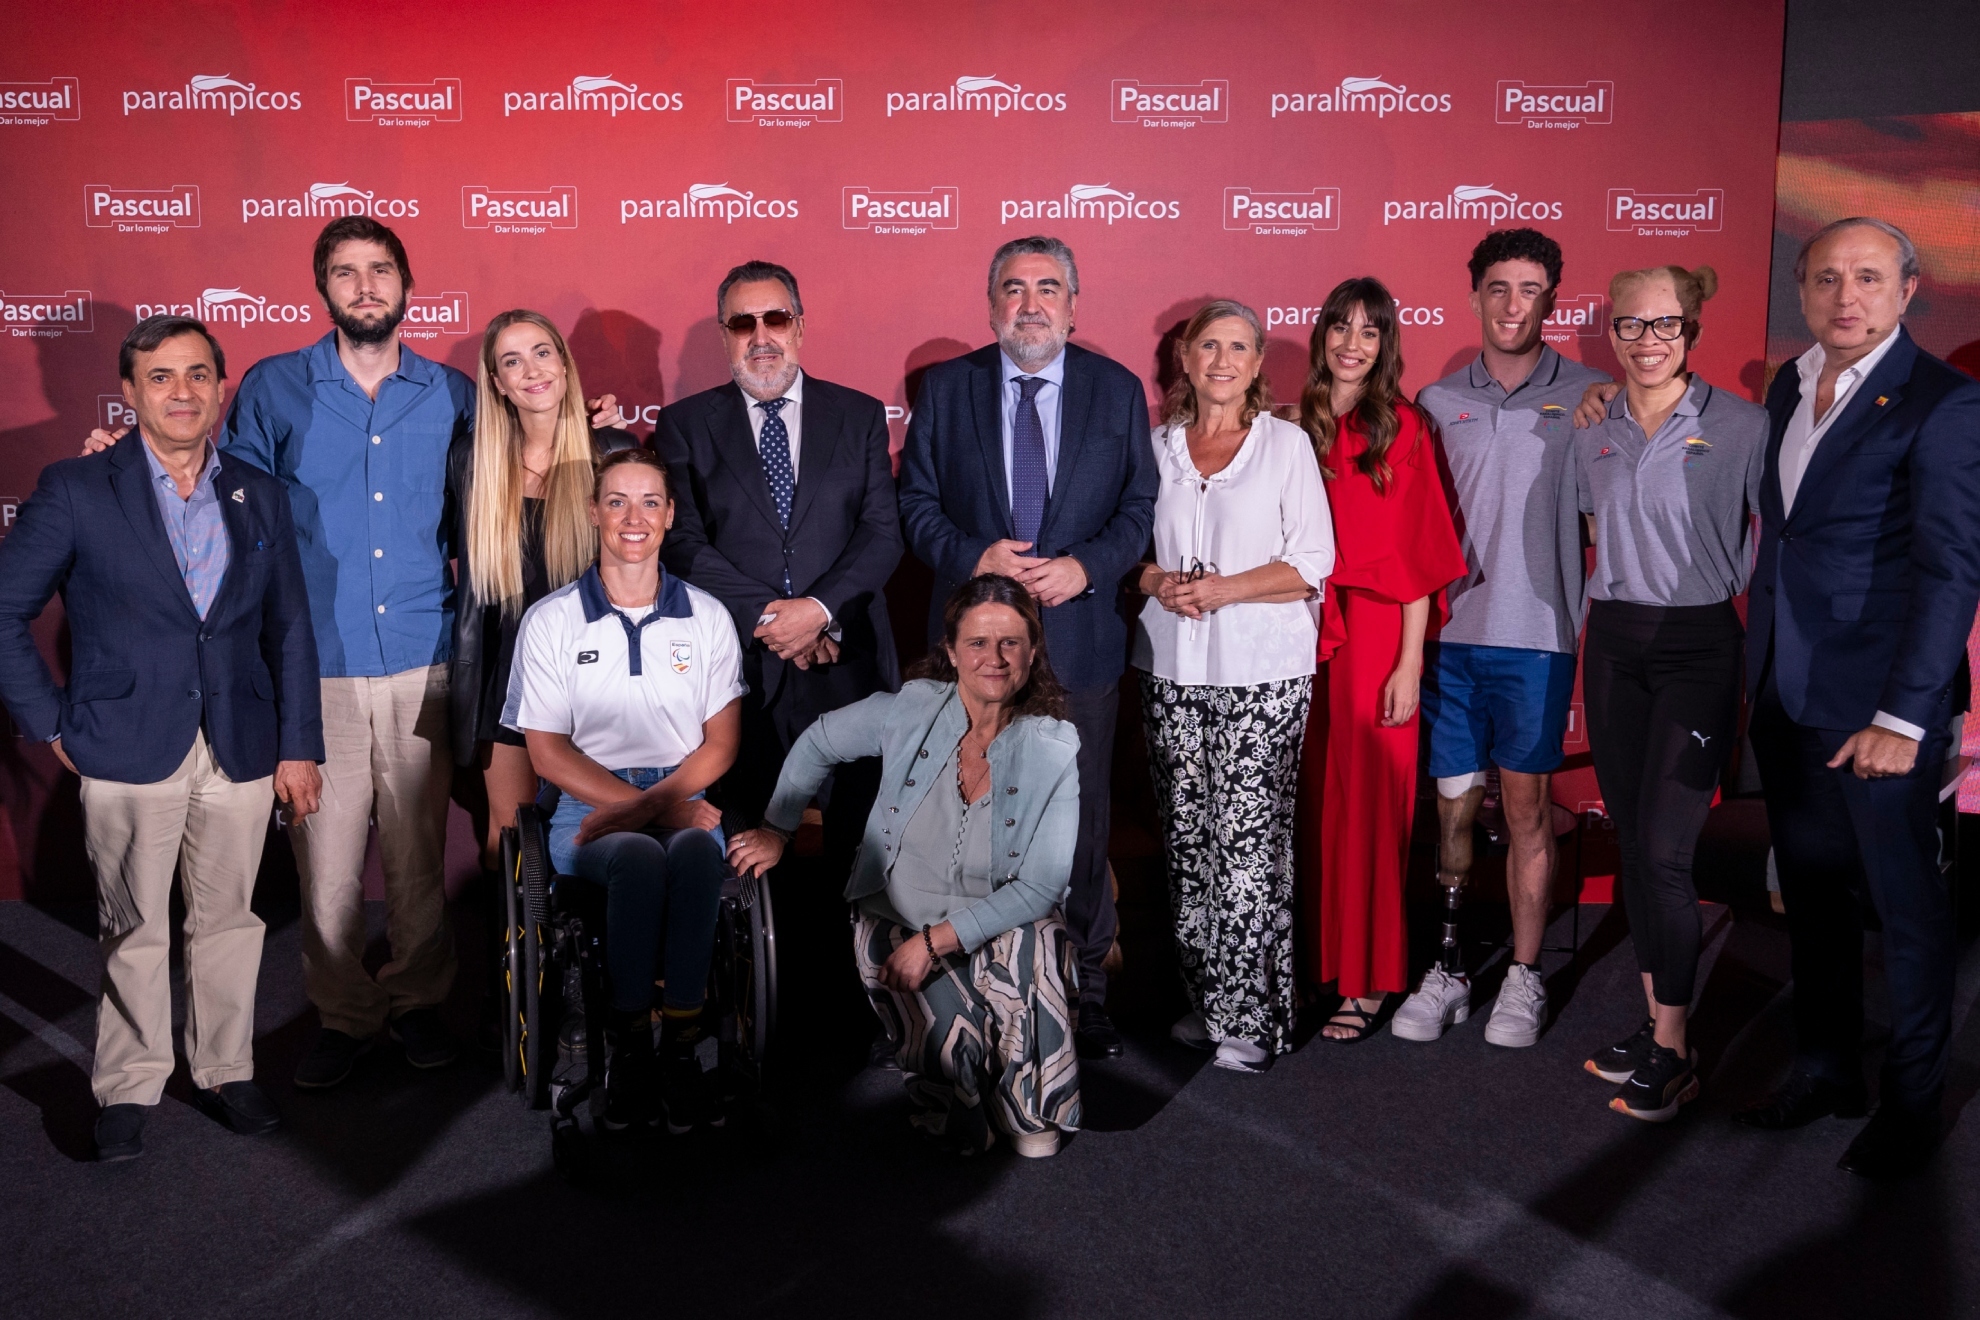 Foto de familia en la presentaci�n de la canci�n oficial del Equipo Paral�mpico Espa�ol Ganar dos veces